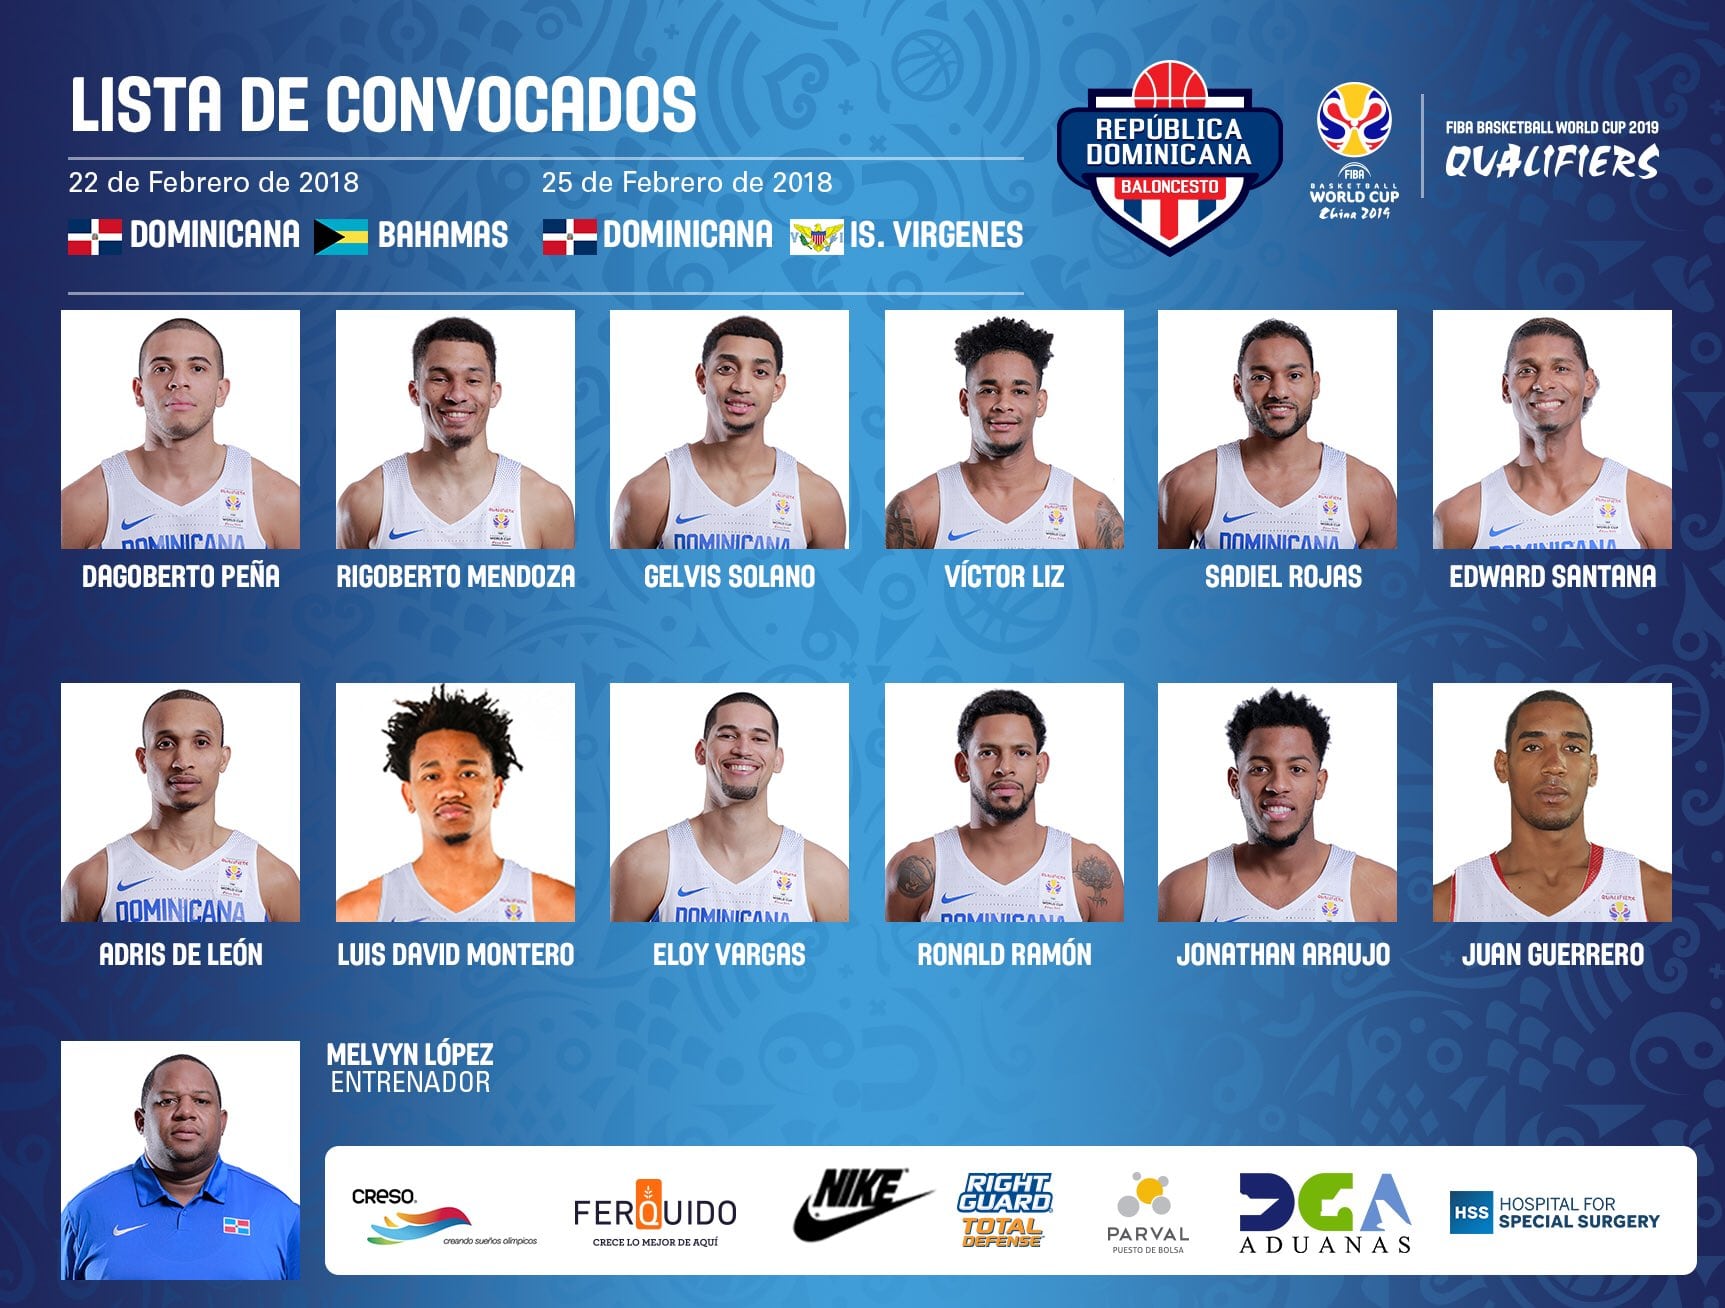 Vicedo, Arteaga (España), Dago Peña (R. Dominicana) y Hakanson (Suecia) repiten en ventanas FIBA, y Brizuela podría debutar